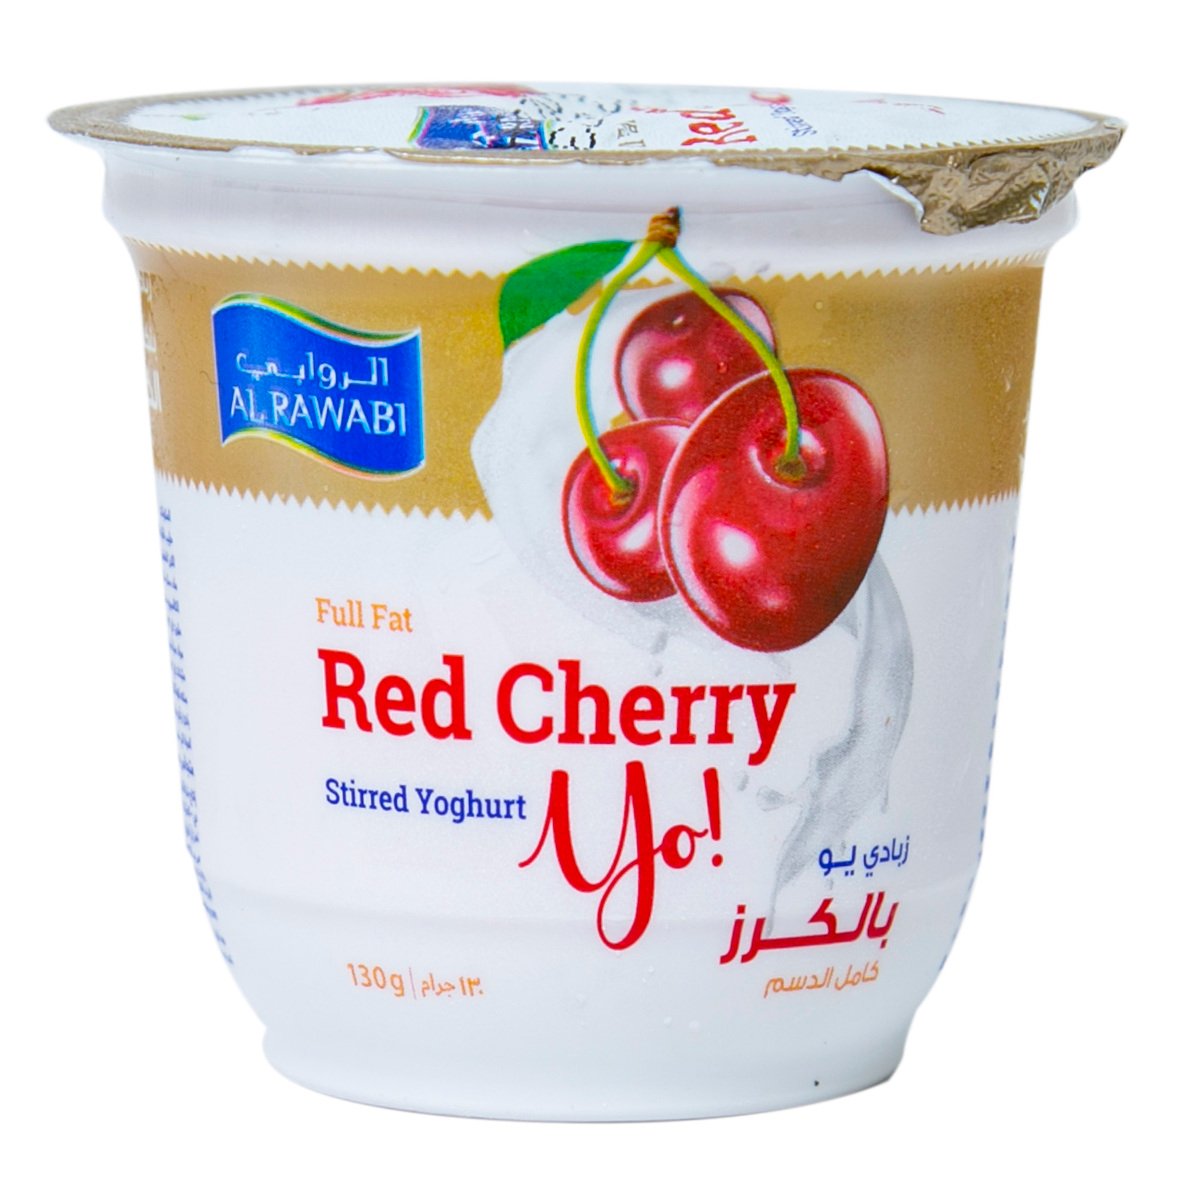 Al Rawabi Stirred Yoghurt Red Cherry 130 g